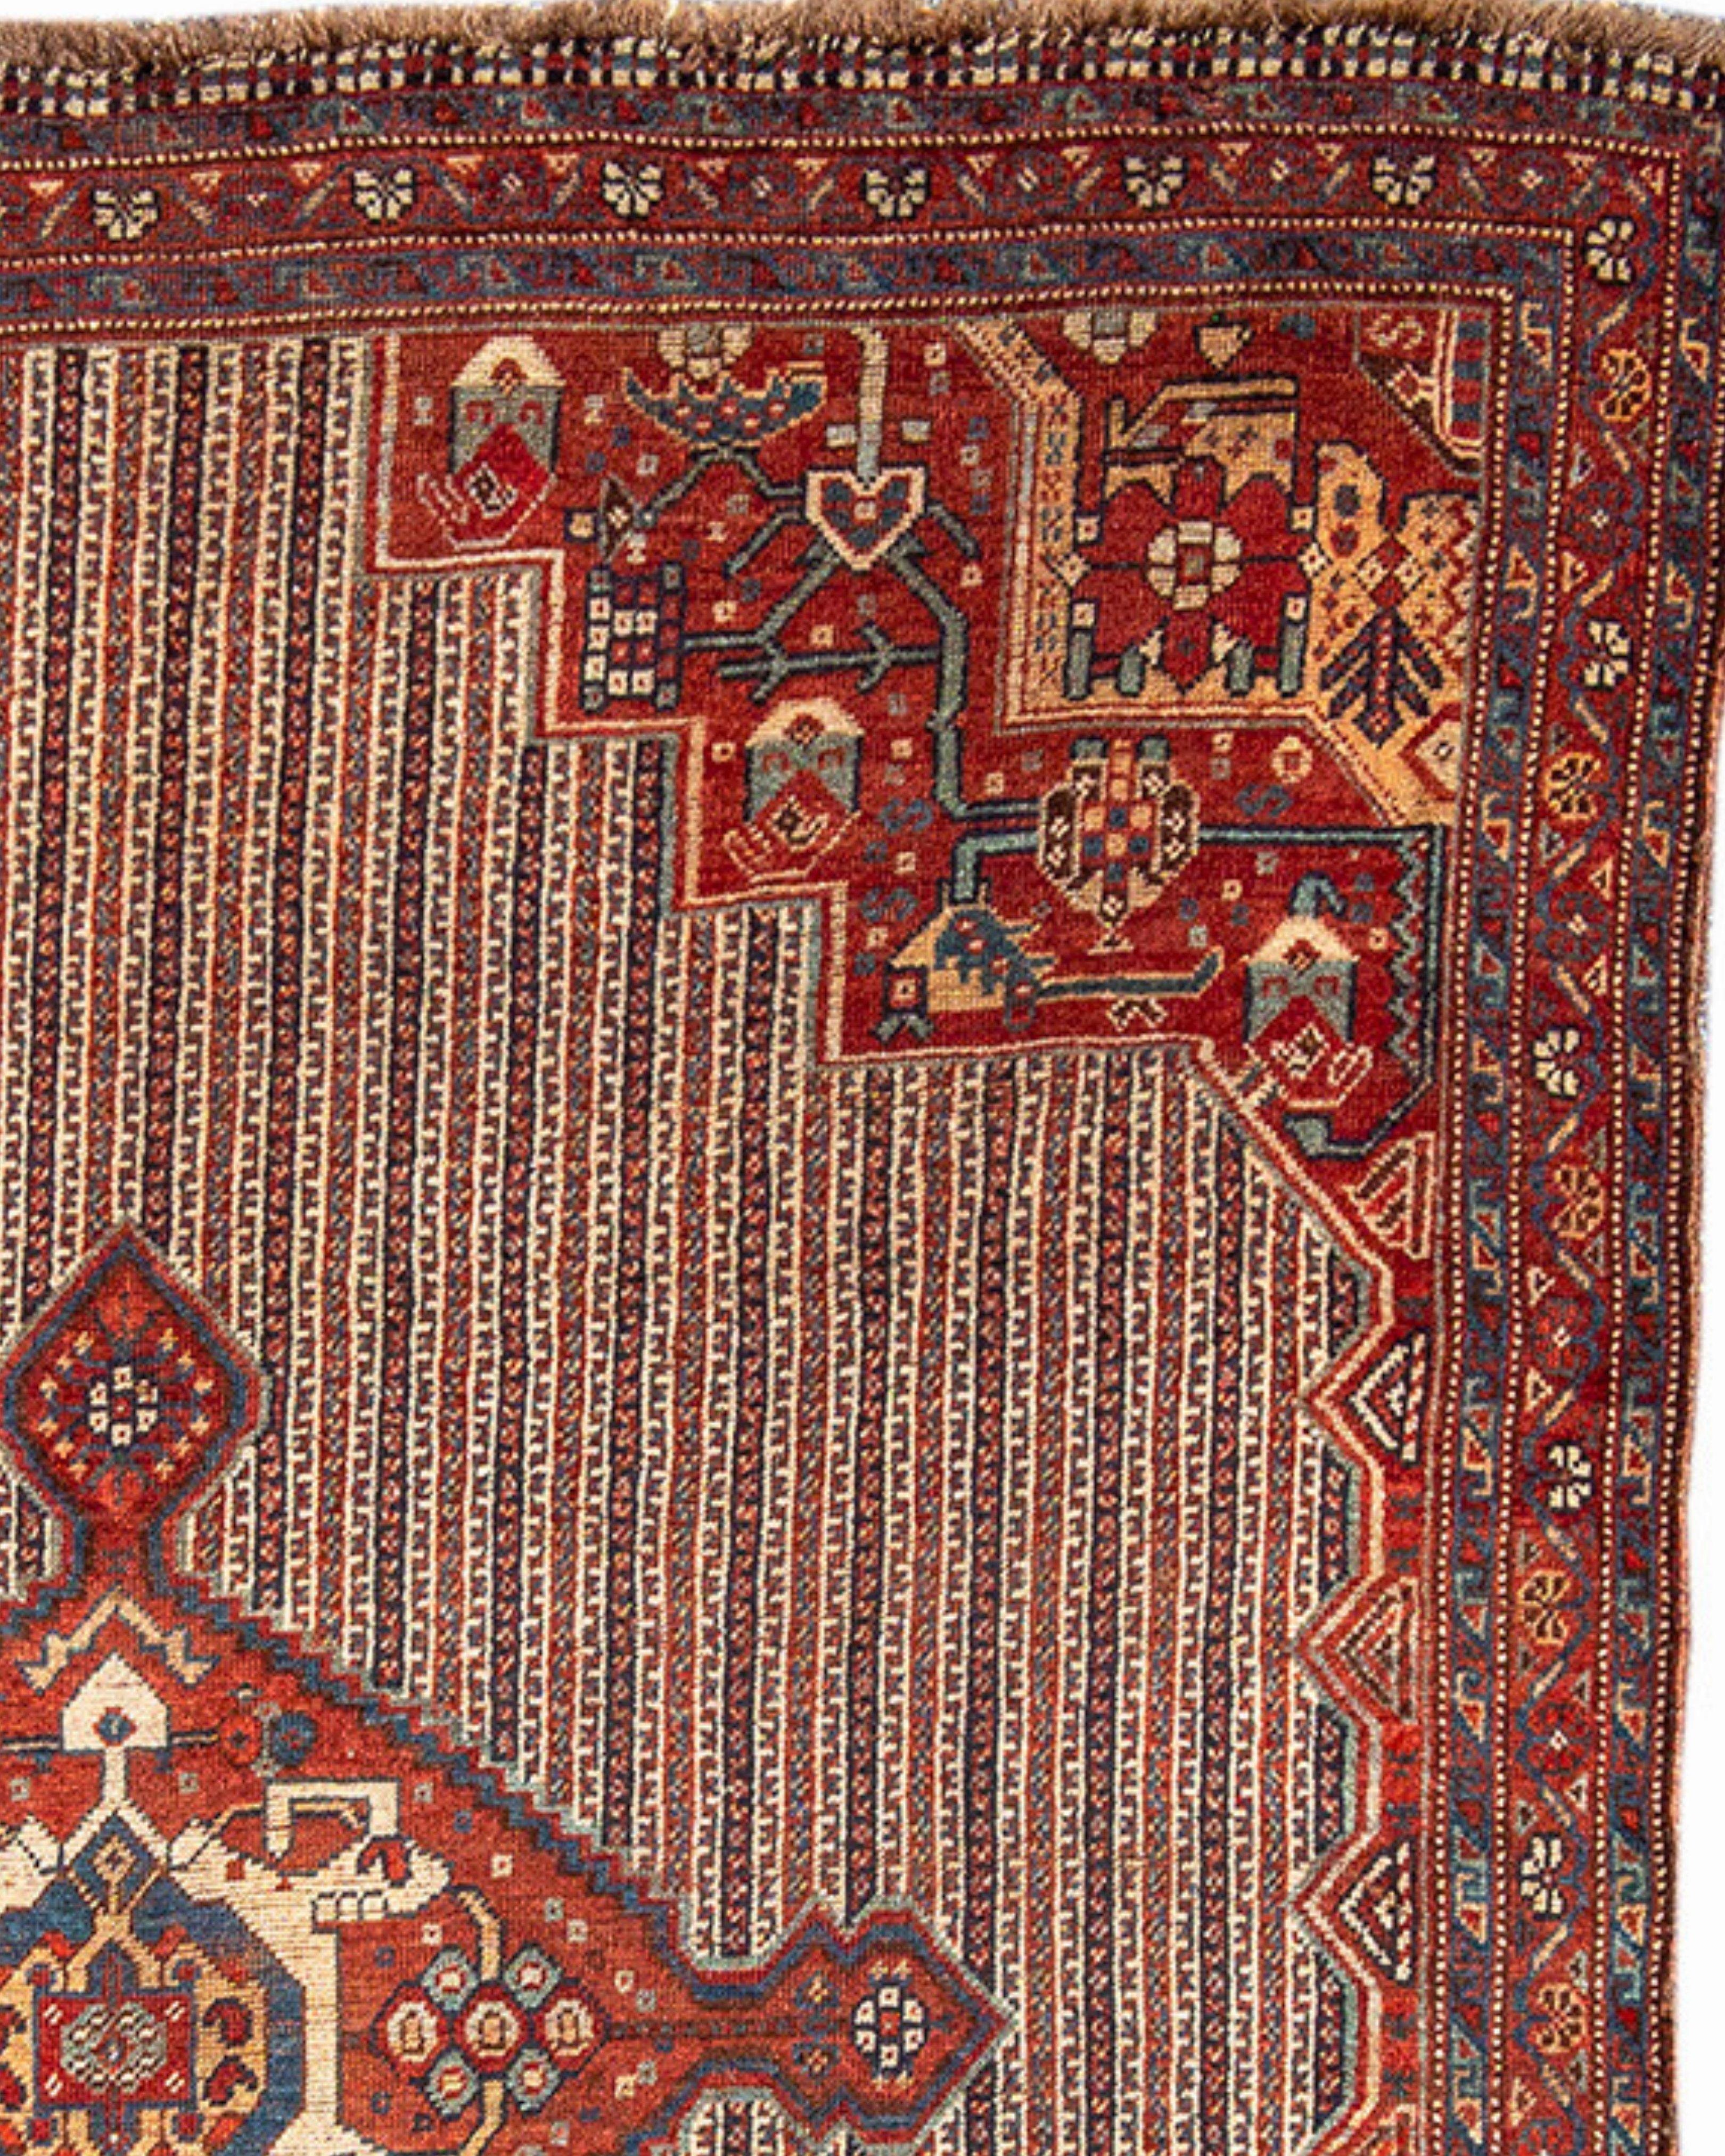 Antiker persischer Khamseh-Teppich, 19. Jahrhundert

Sehr guter Zustand mit leichten Gebrauchsspuren.

Zusätzliche Informationen:
Abmessungen: 4'6